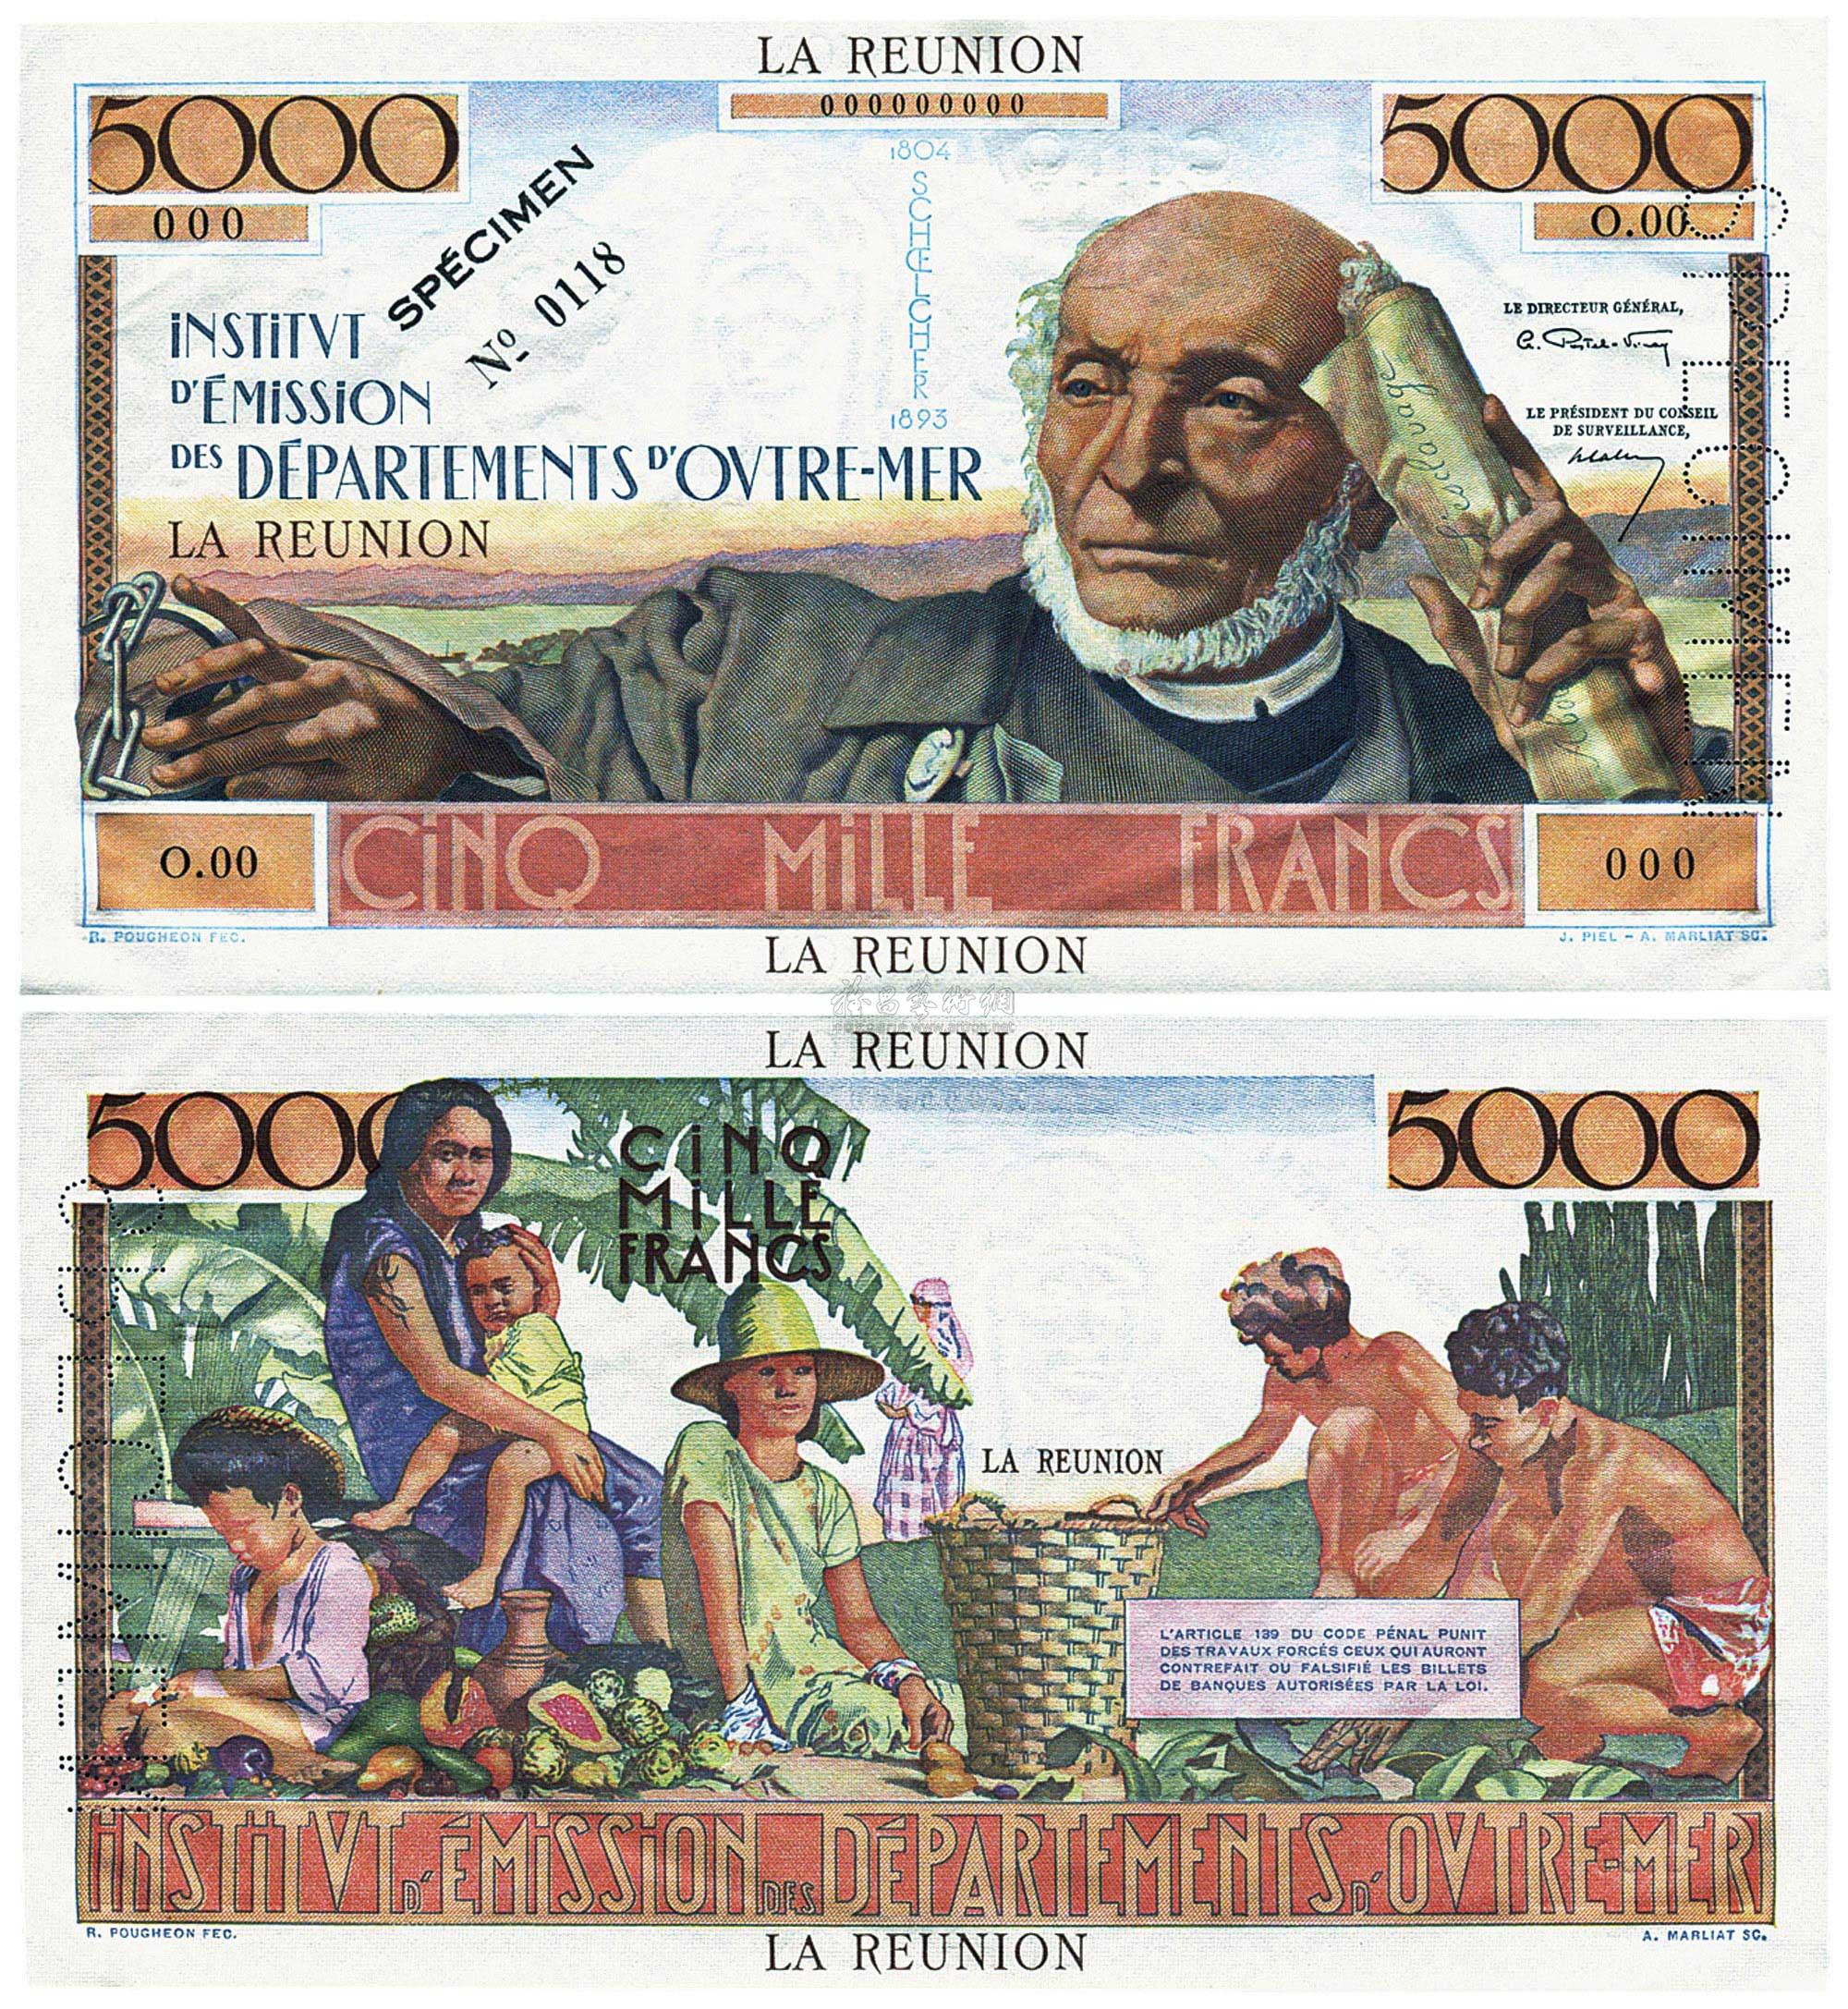 0503 留尼汪岛(1965年)5000法郎